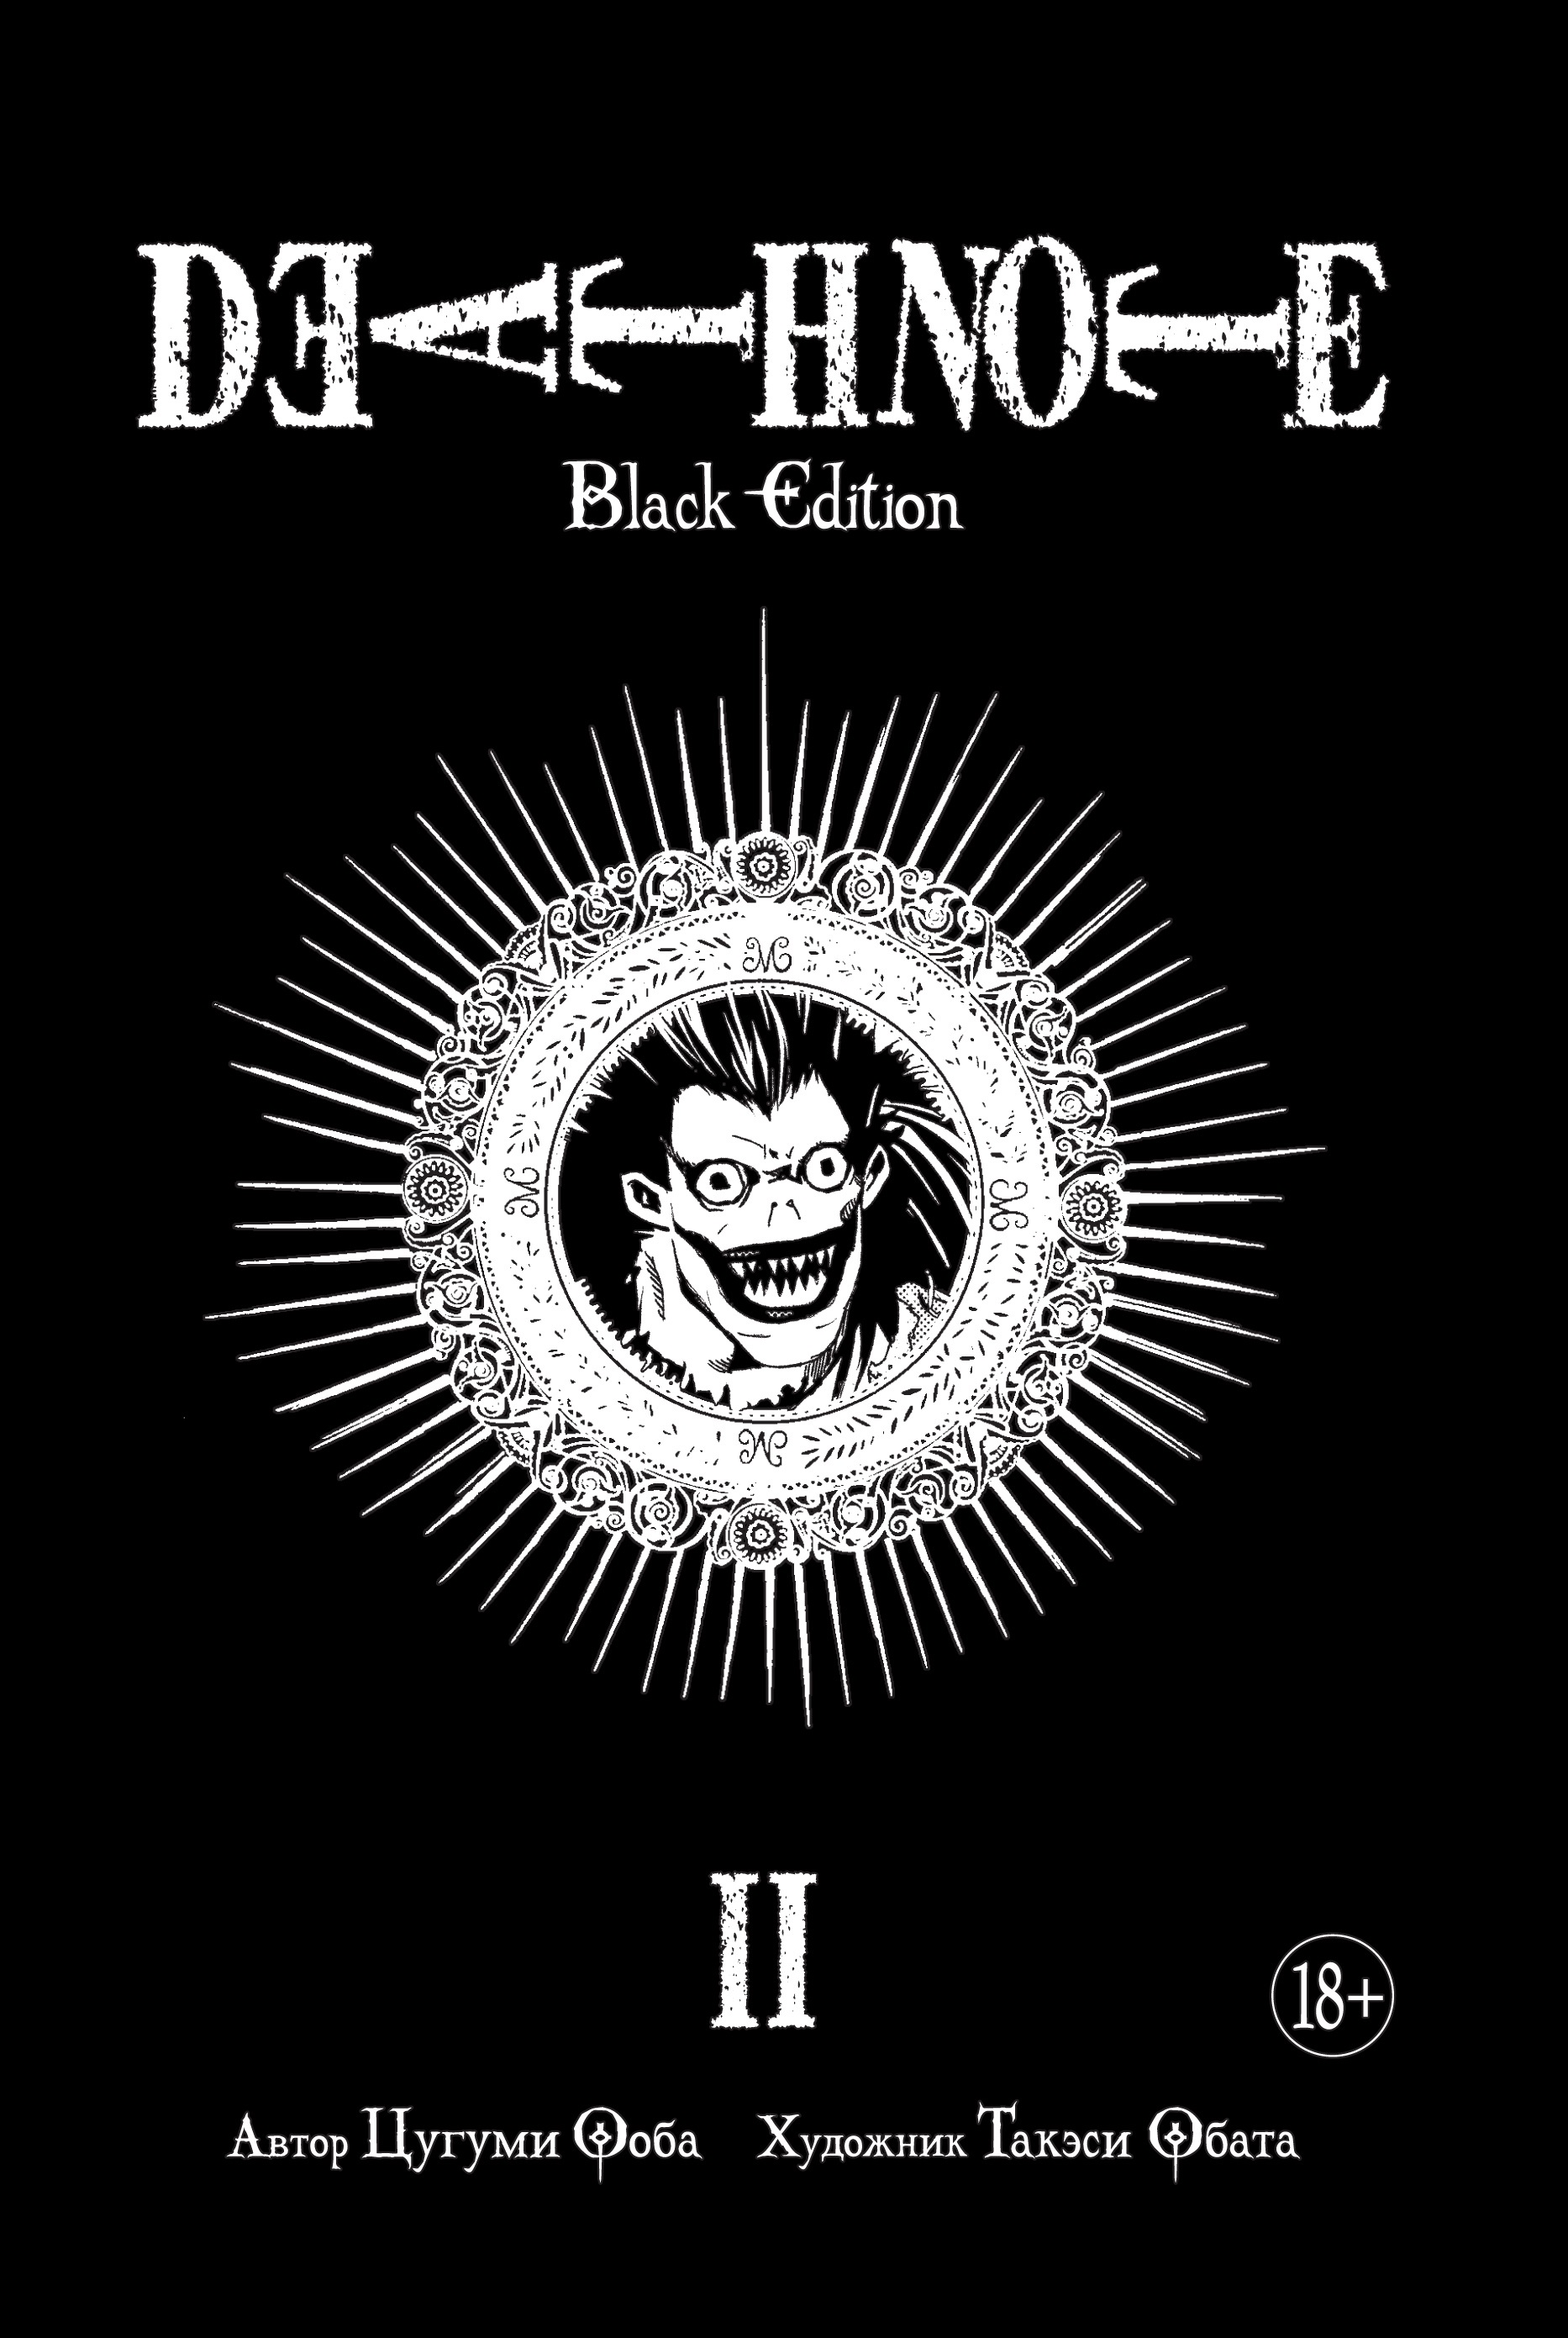 Ооба Цугуми Death Note. Black Edition. Книга 2: манга ооба цугуми обата такэси death note black edition книга 3 манга